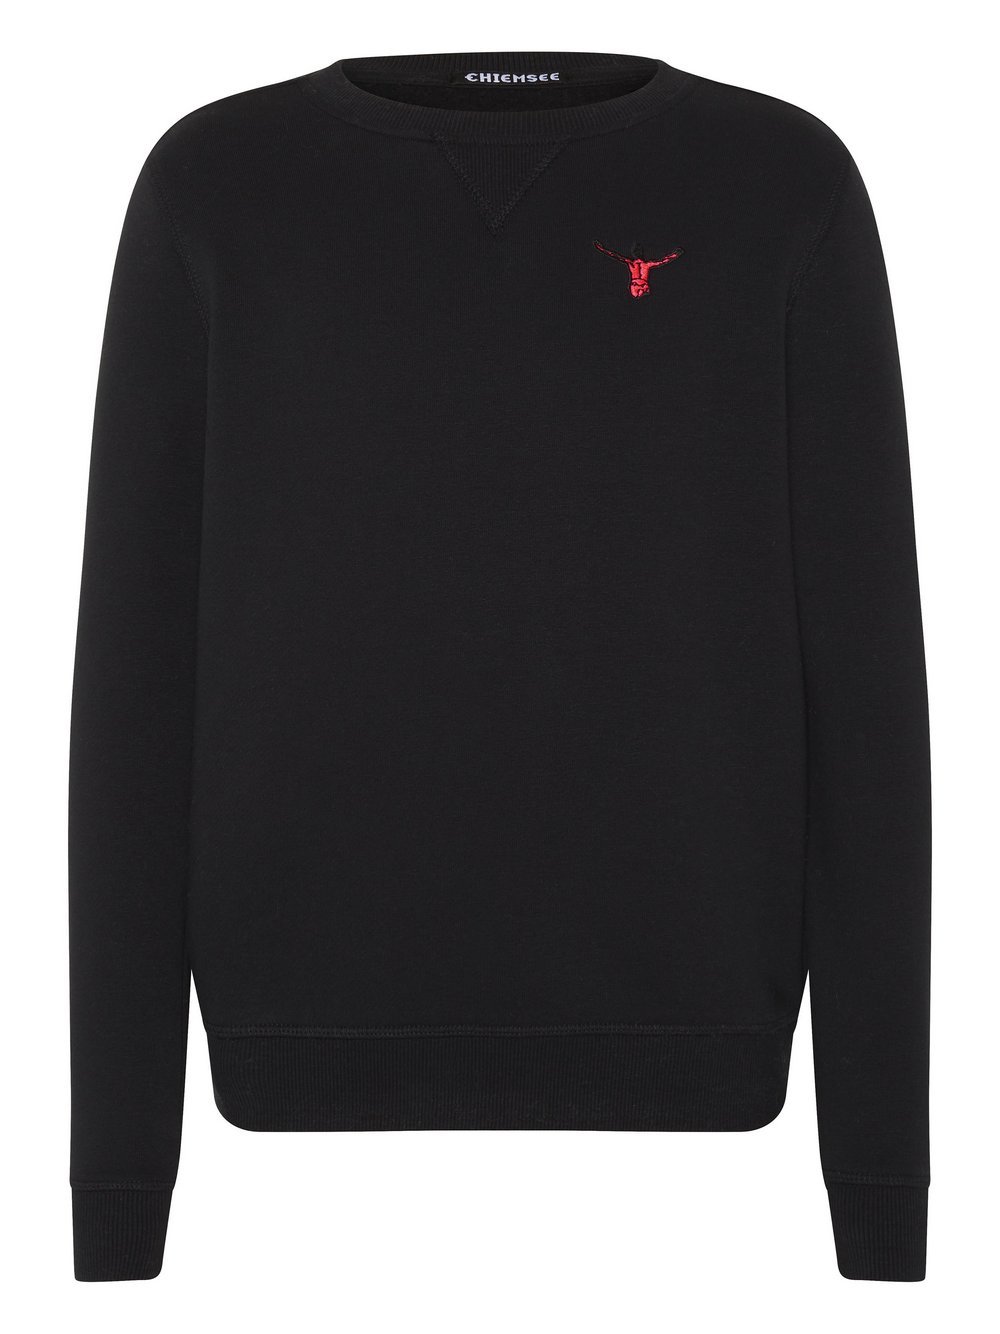 Chiemsee Sweater Jungen schwarz, 158